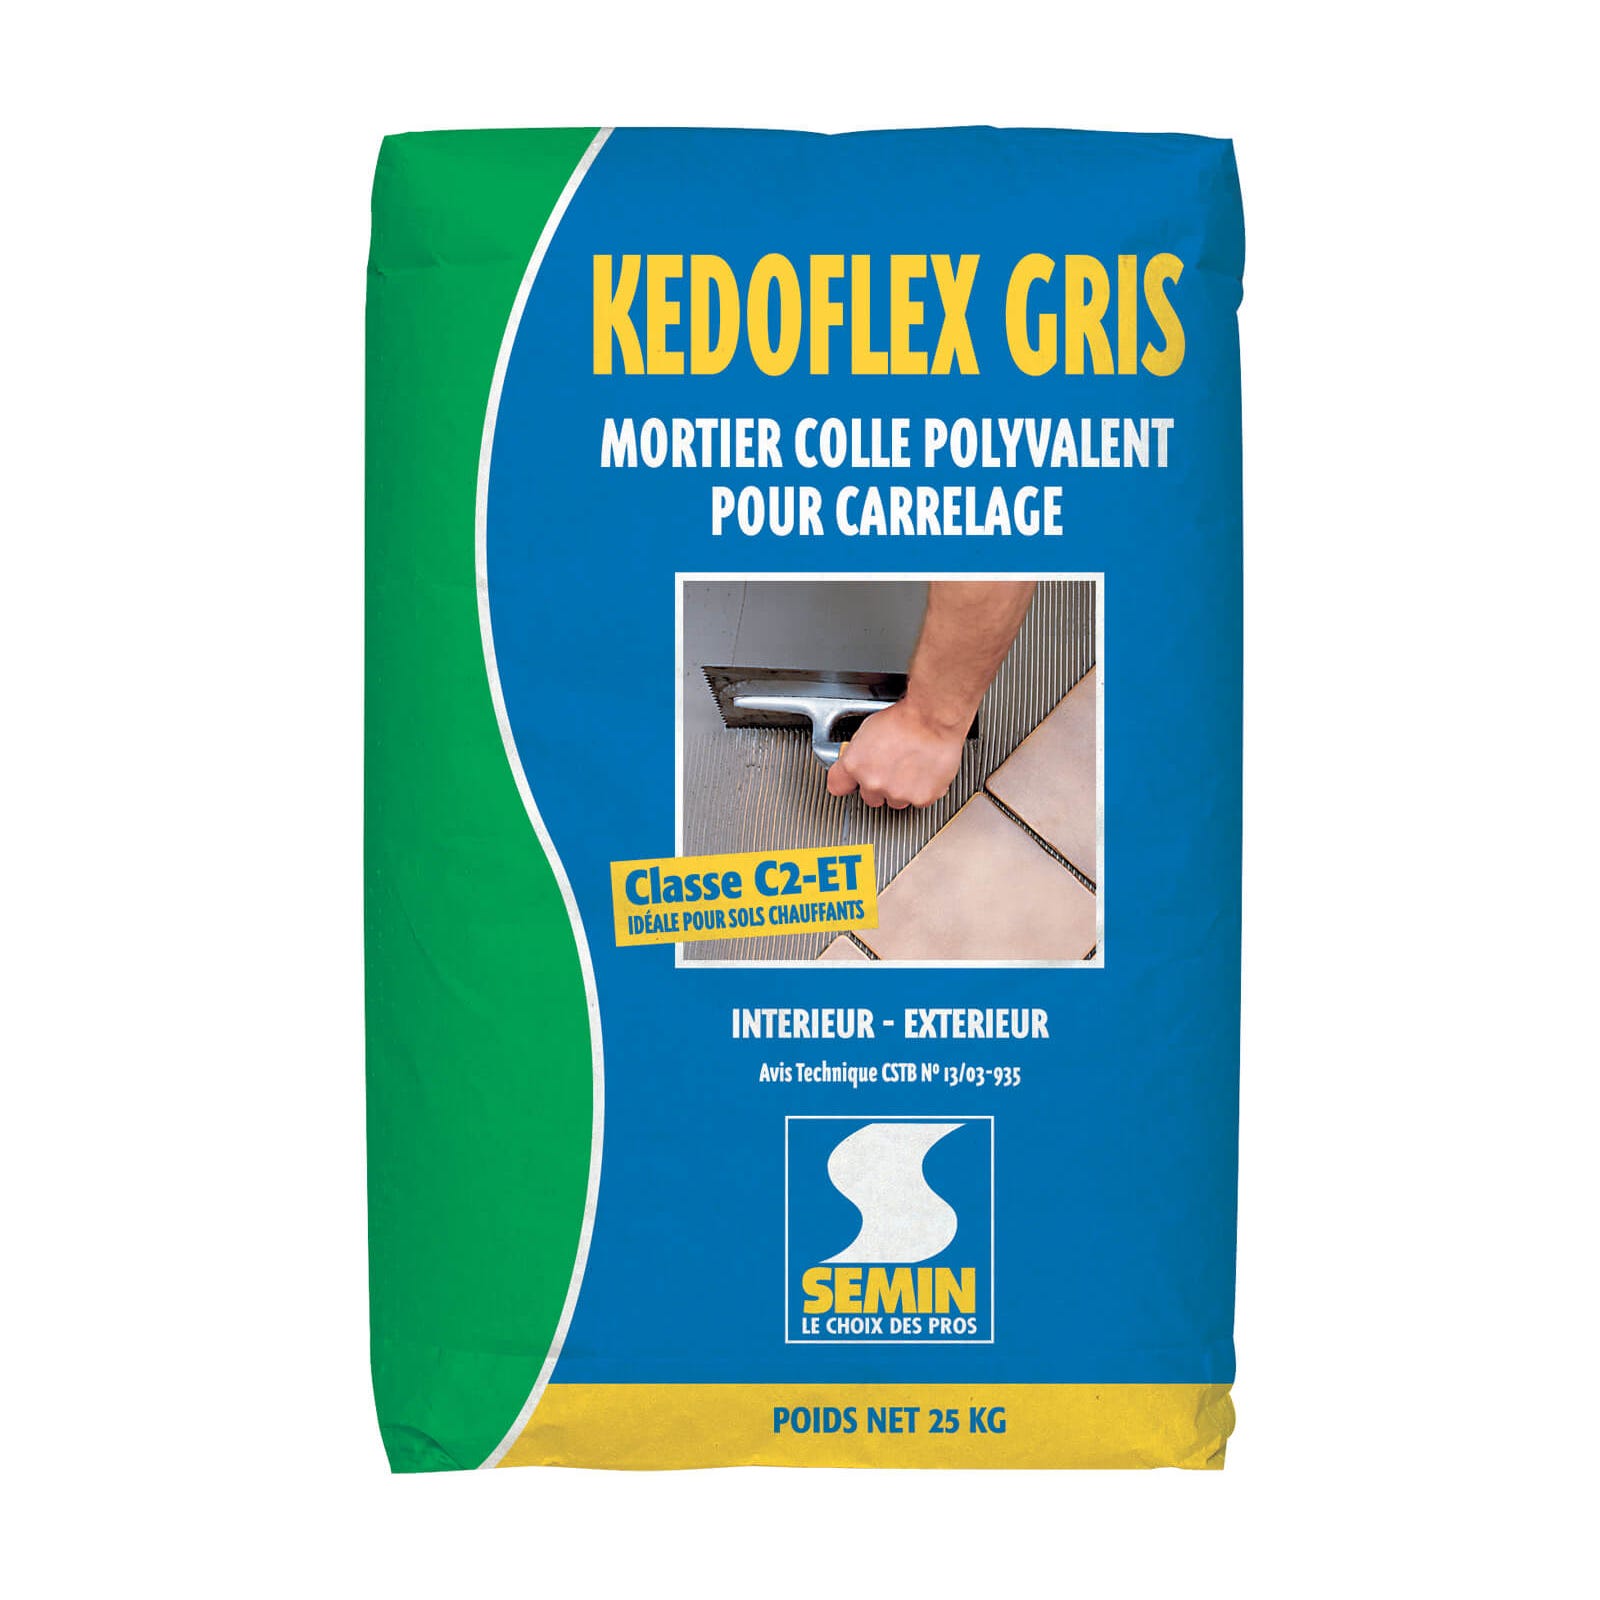 Mortier Colle Polyvalent pour Carrelage Kedoflex Gris Semin, Intérieur/Extérieur, sac de 25 kg 0